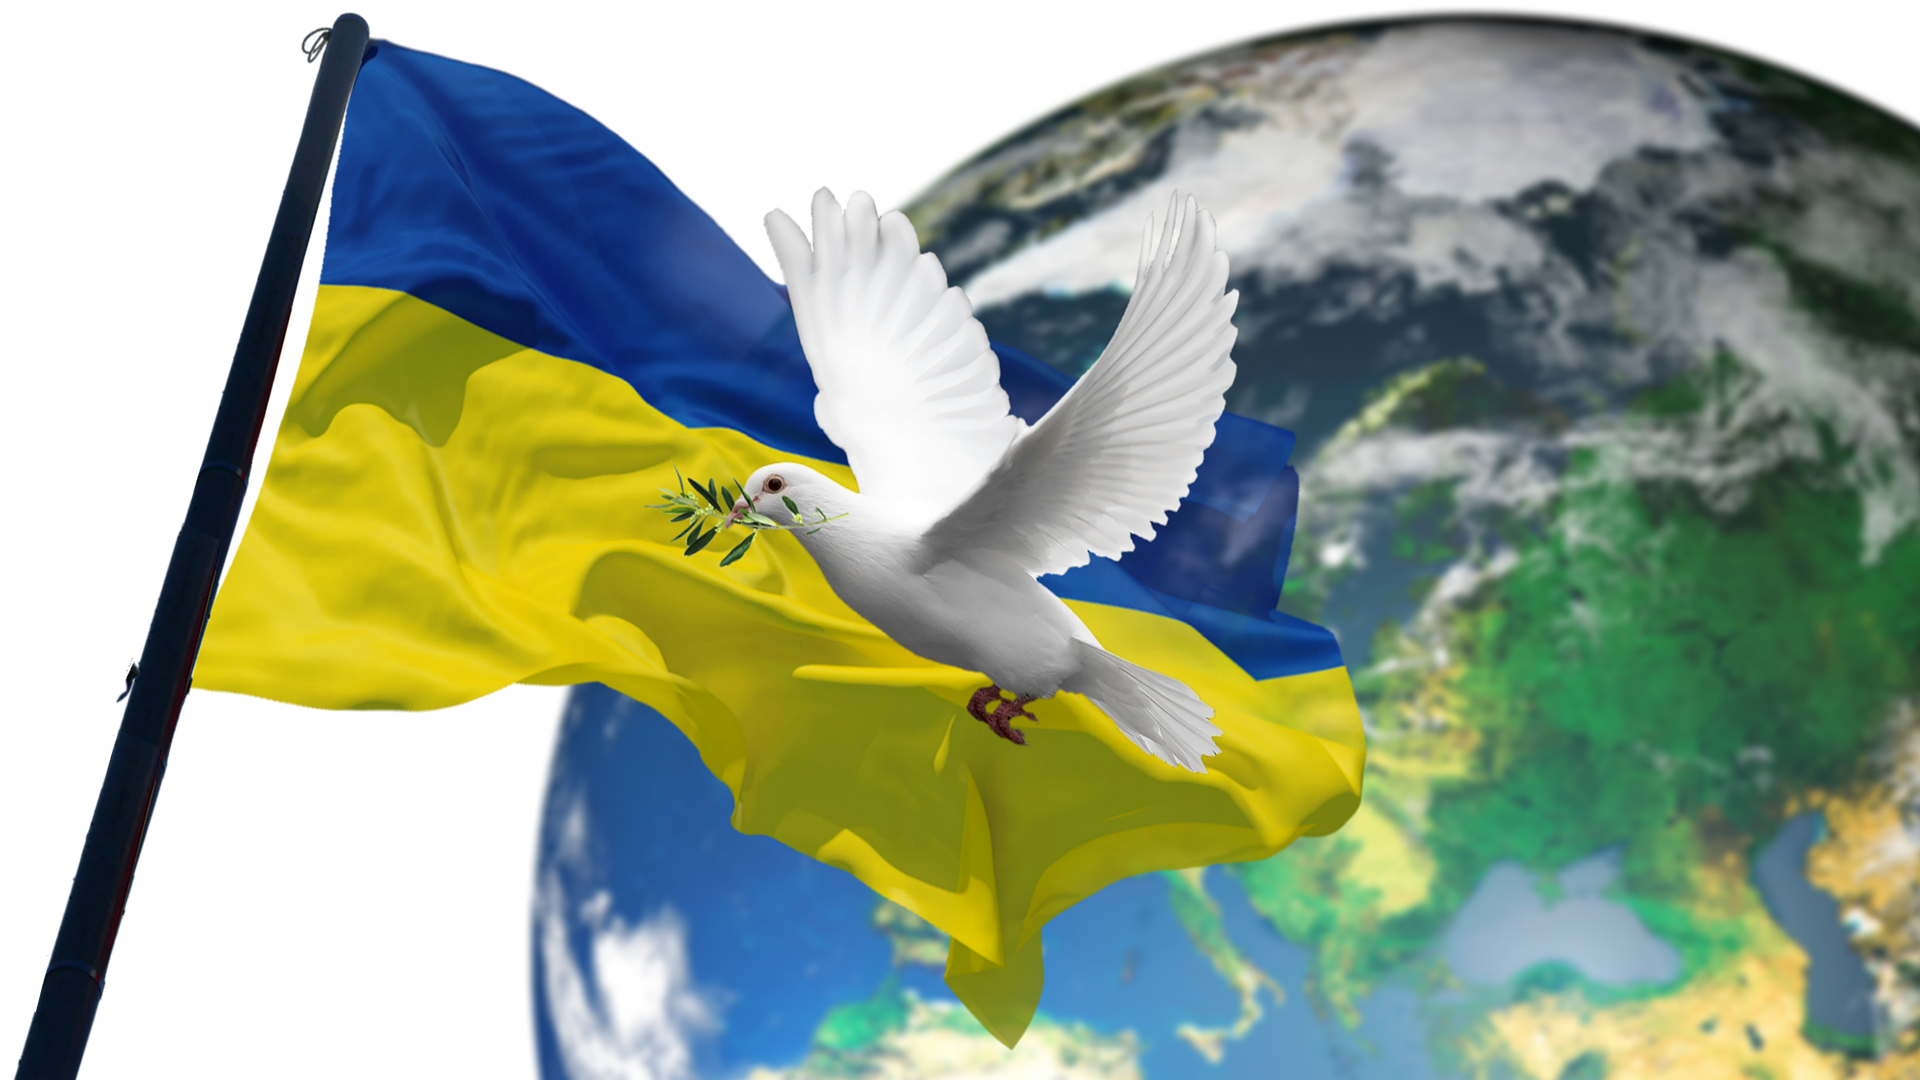 Die unerwünschte Souveränität – Alle Völker der Erde haben ein Recht auf Selbstbestimmung, so auch das Volk der Ostukraine. Teil 2/3.